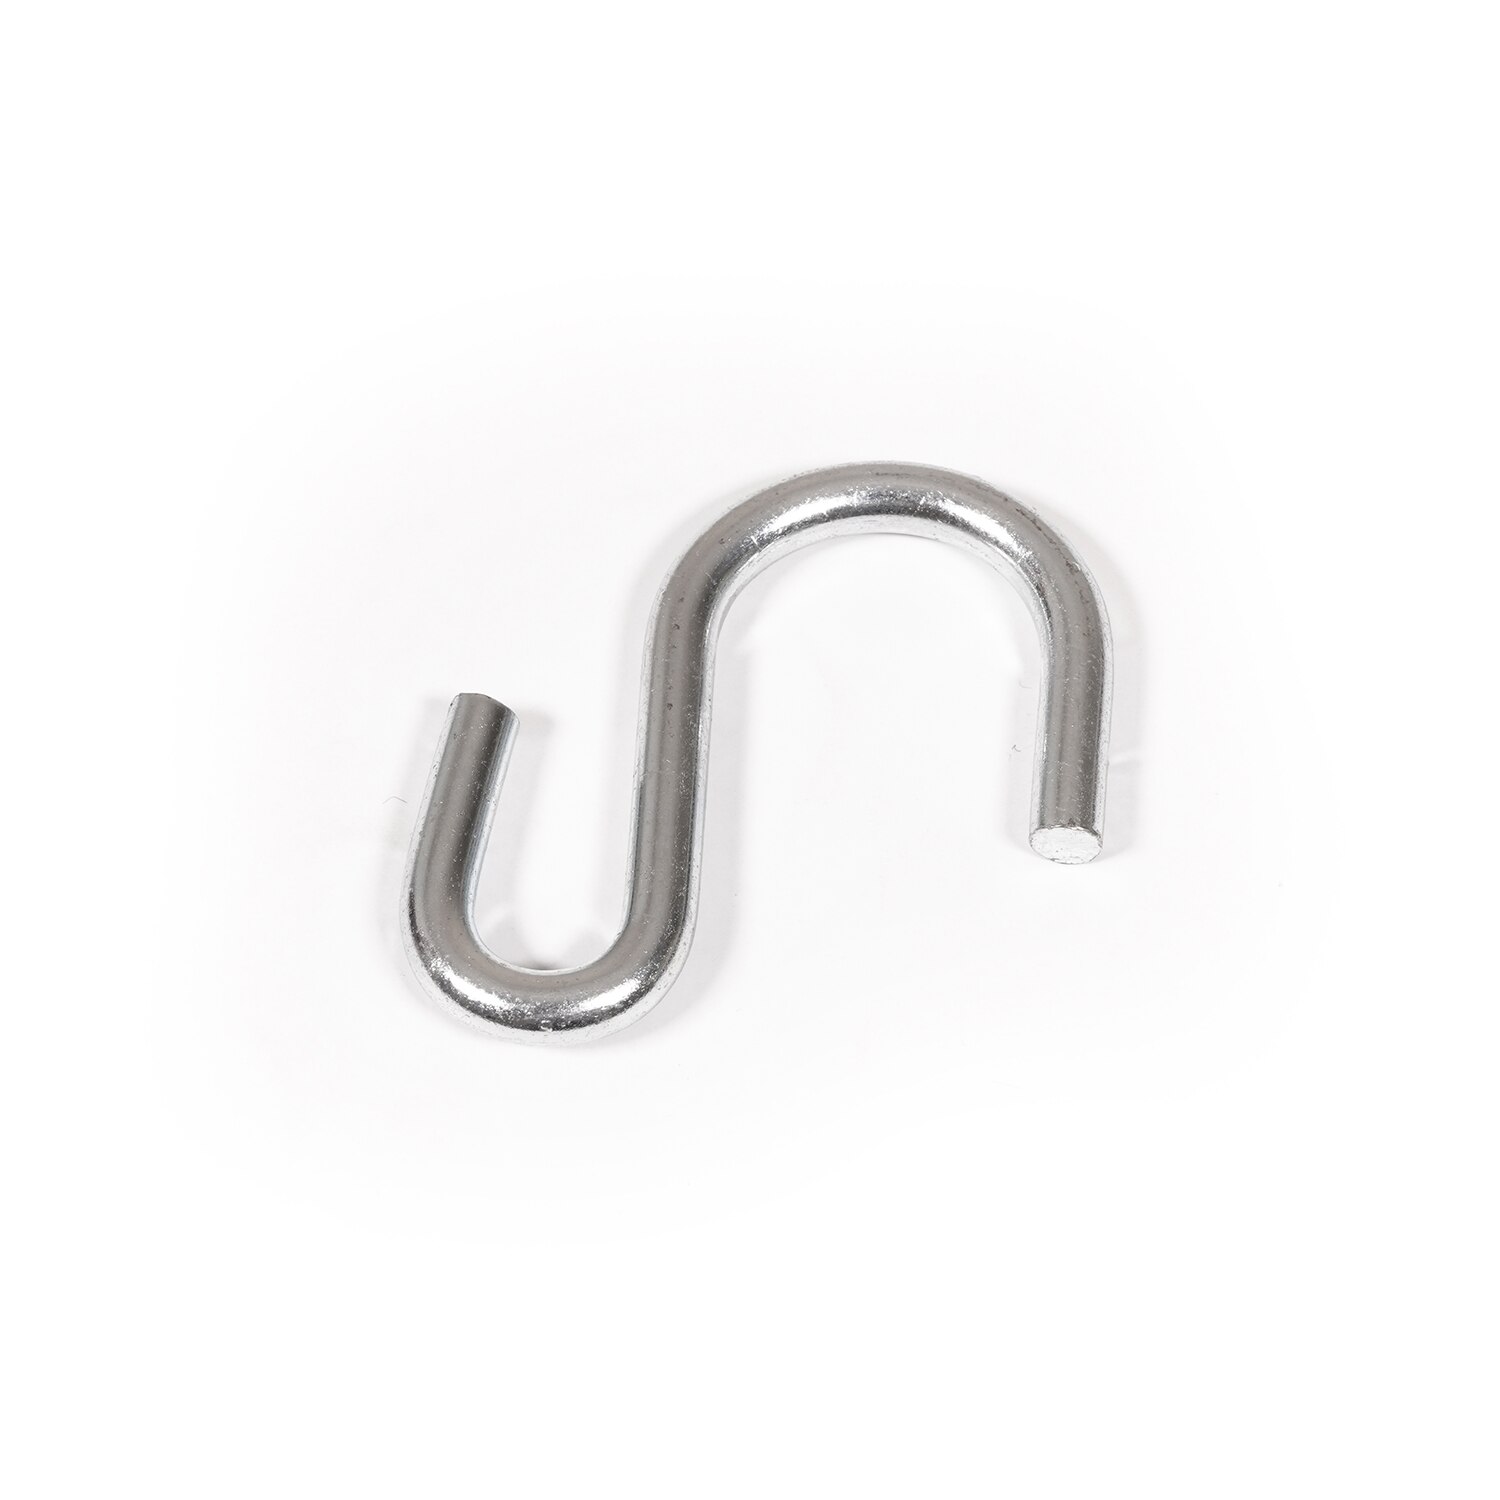 S-Hook #3 1-5/8 Zinc-Plated Steel